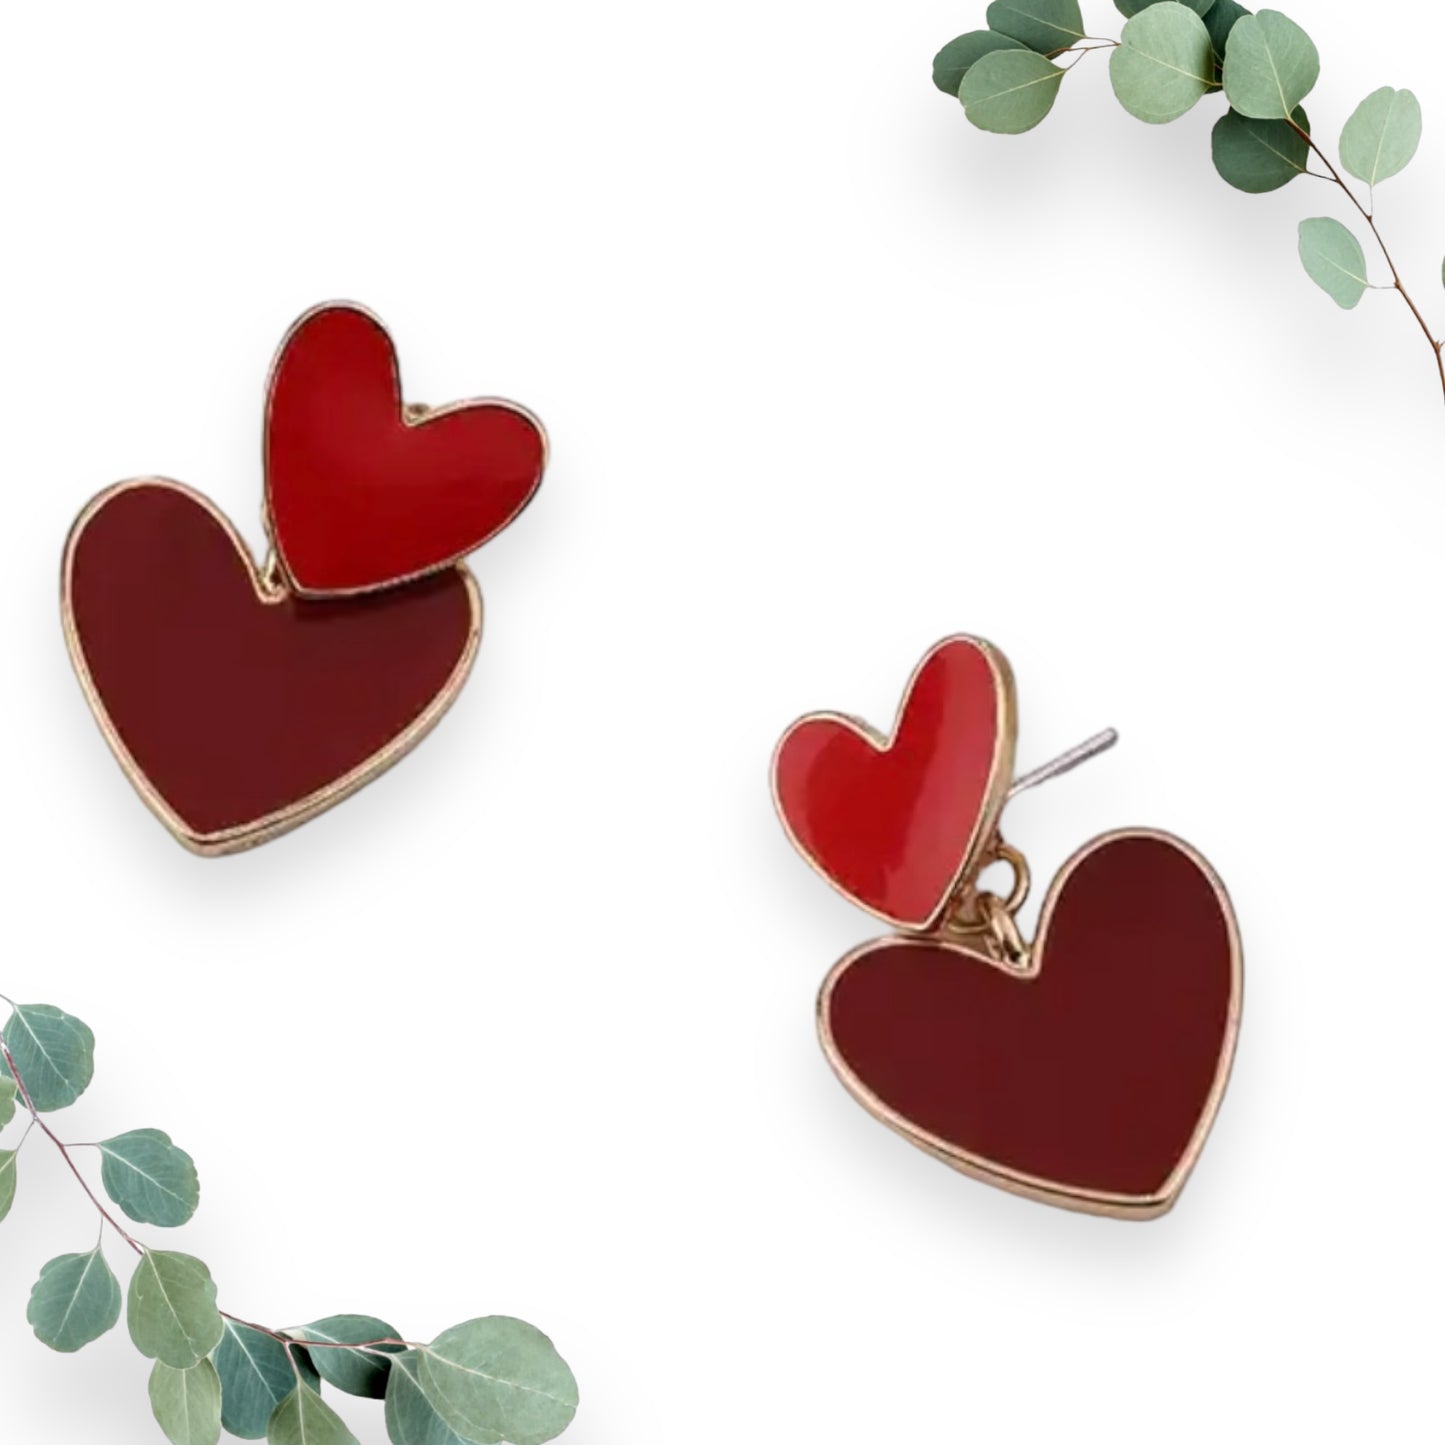 2 Piece Heart Stud Earrings